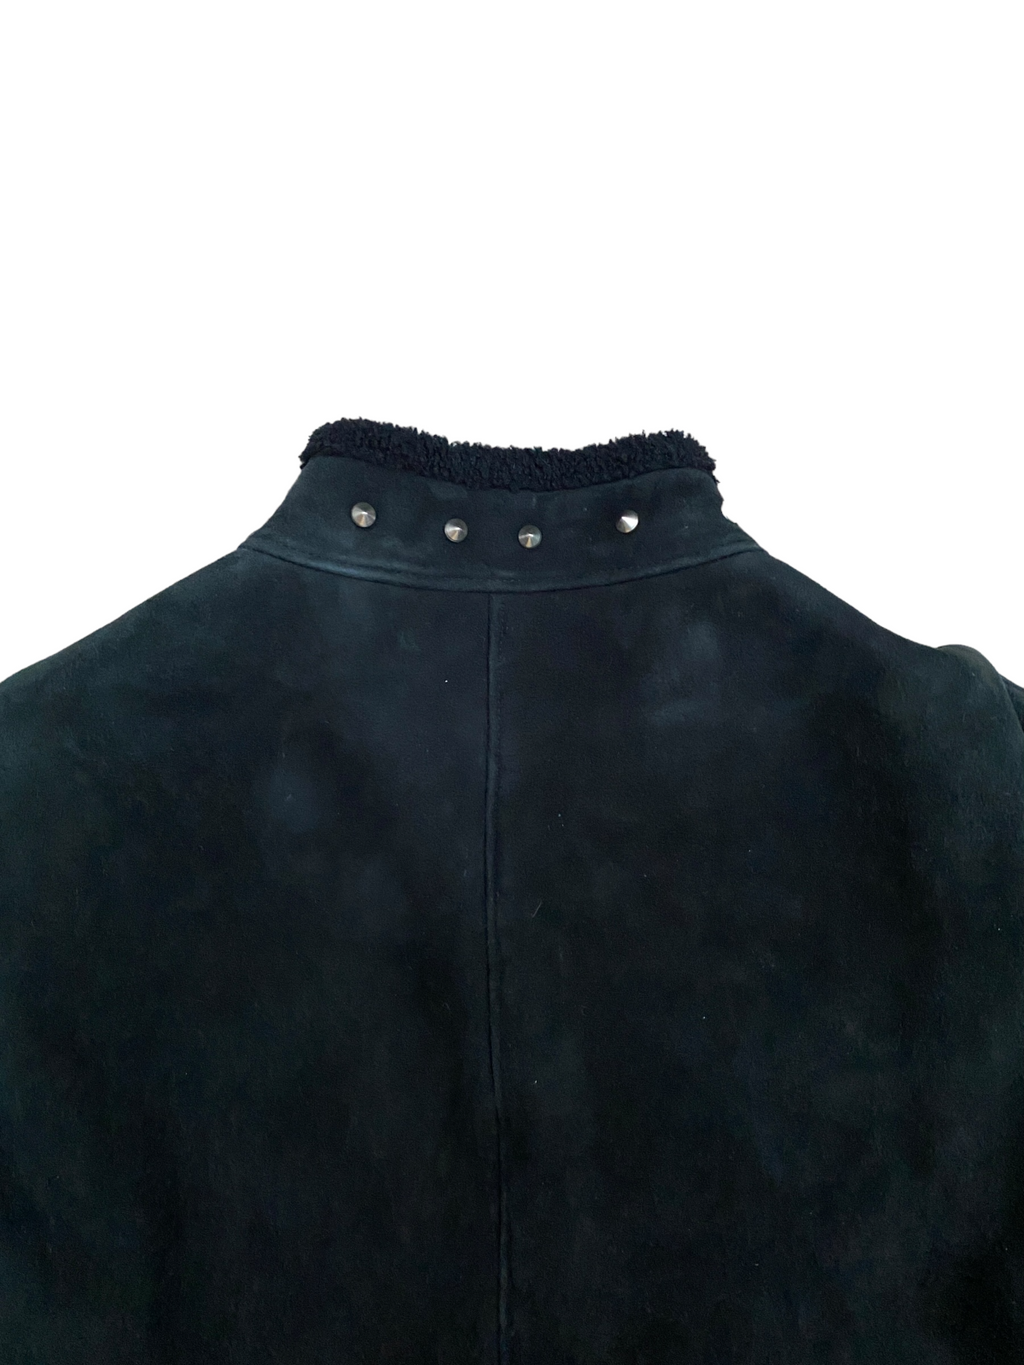 Vintage Black Shearling Jacket Spikes